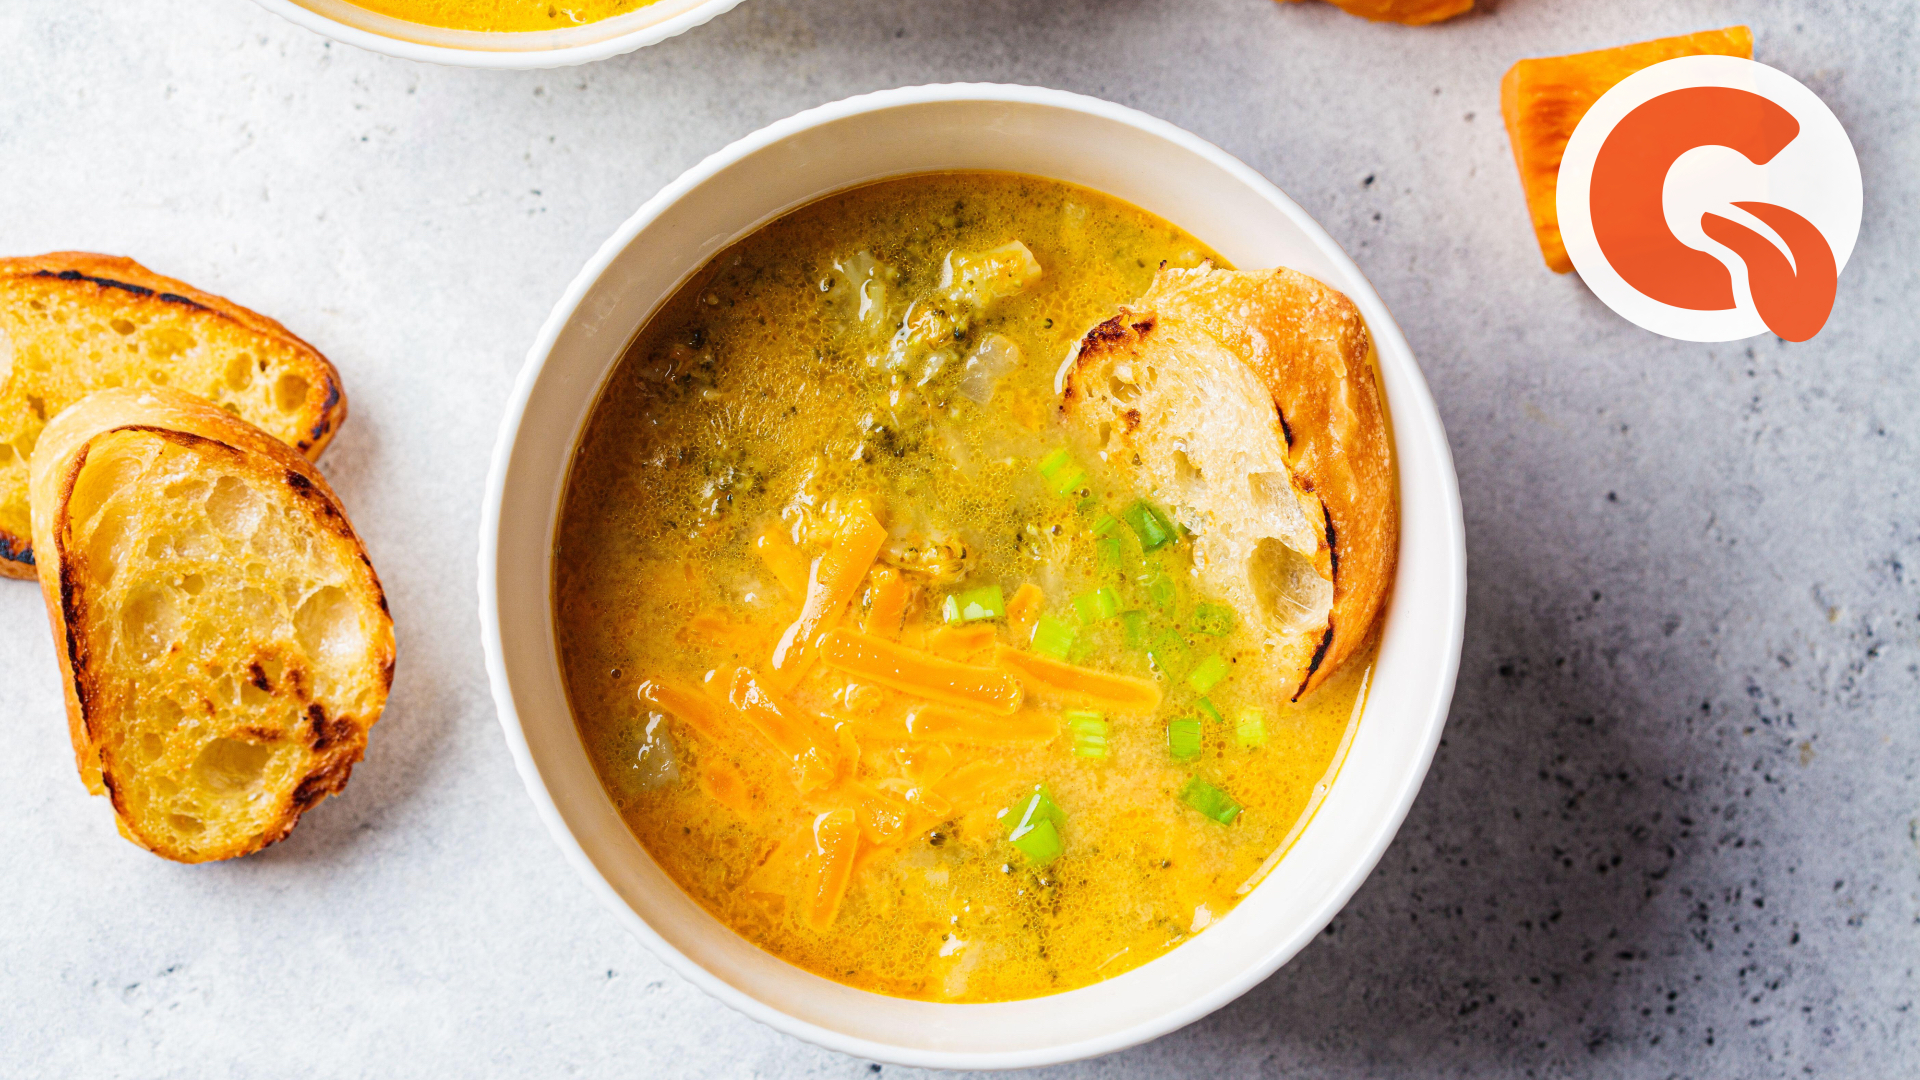 Суп из плавленных сырков: фото рецепт